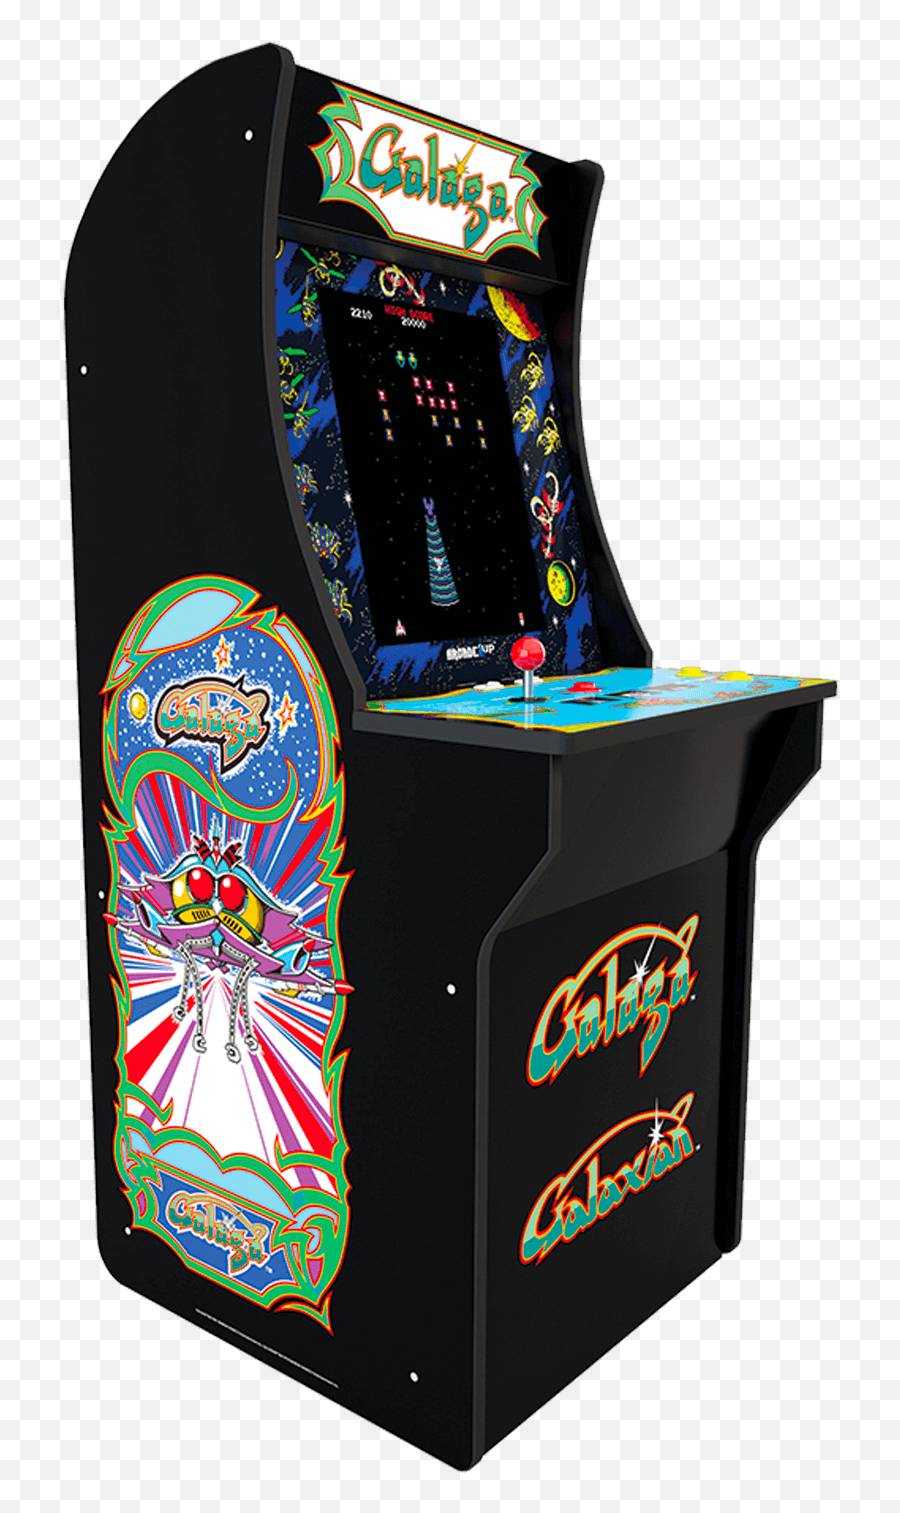 Galaga Images Posted - 1up Arcade Galaga Game Png,Galaga Png